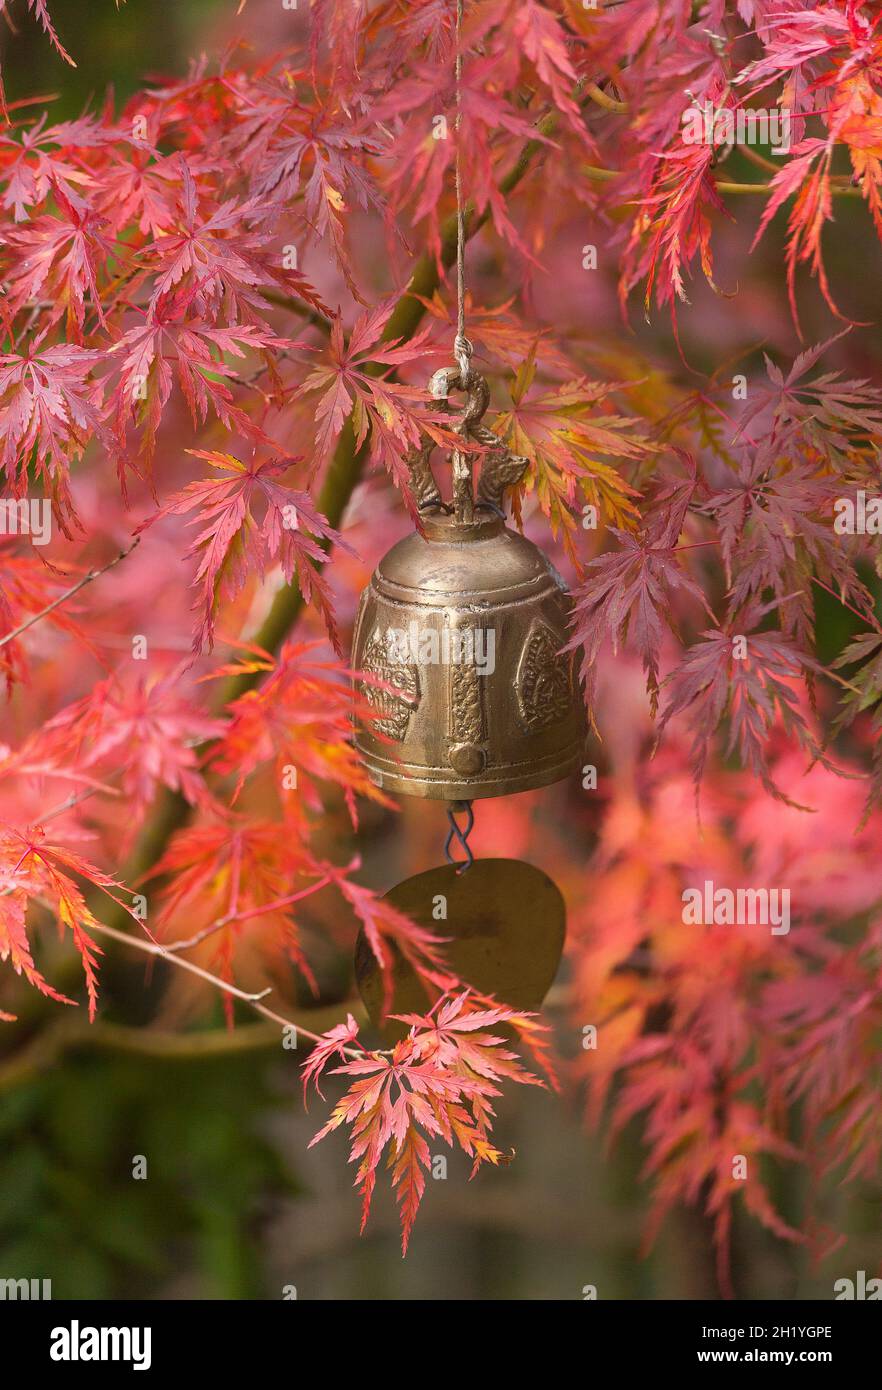 Cloche de jardin ornementale parmi les feuilles rouges d'Acer, automne Banque D'Images